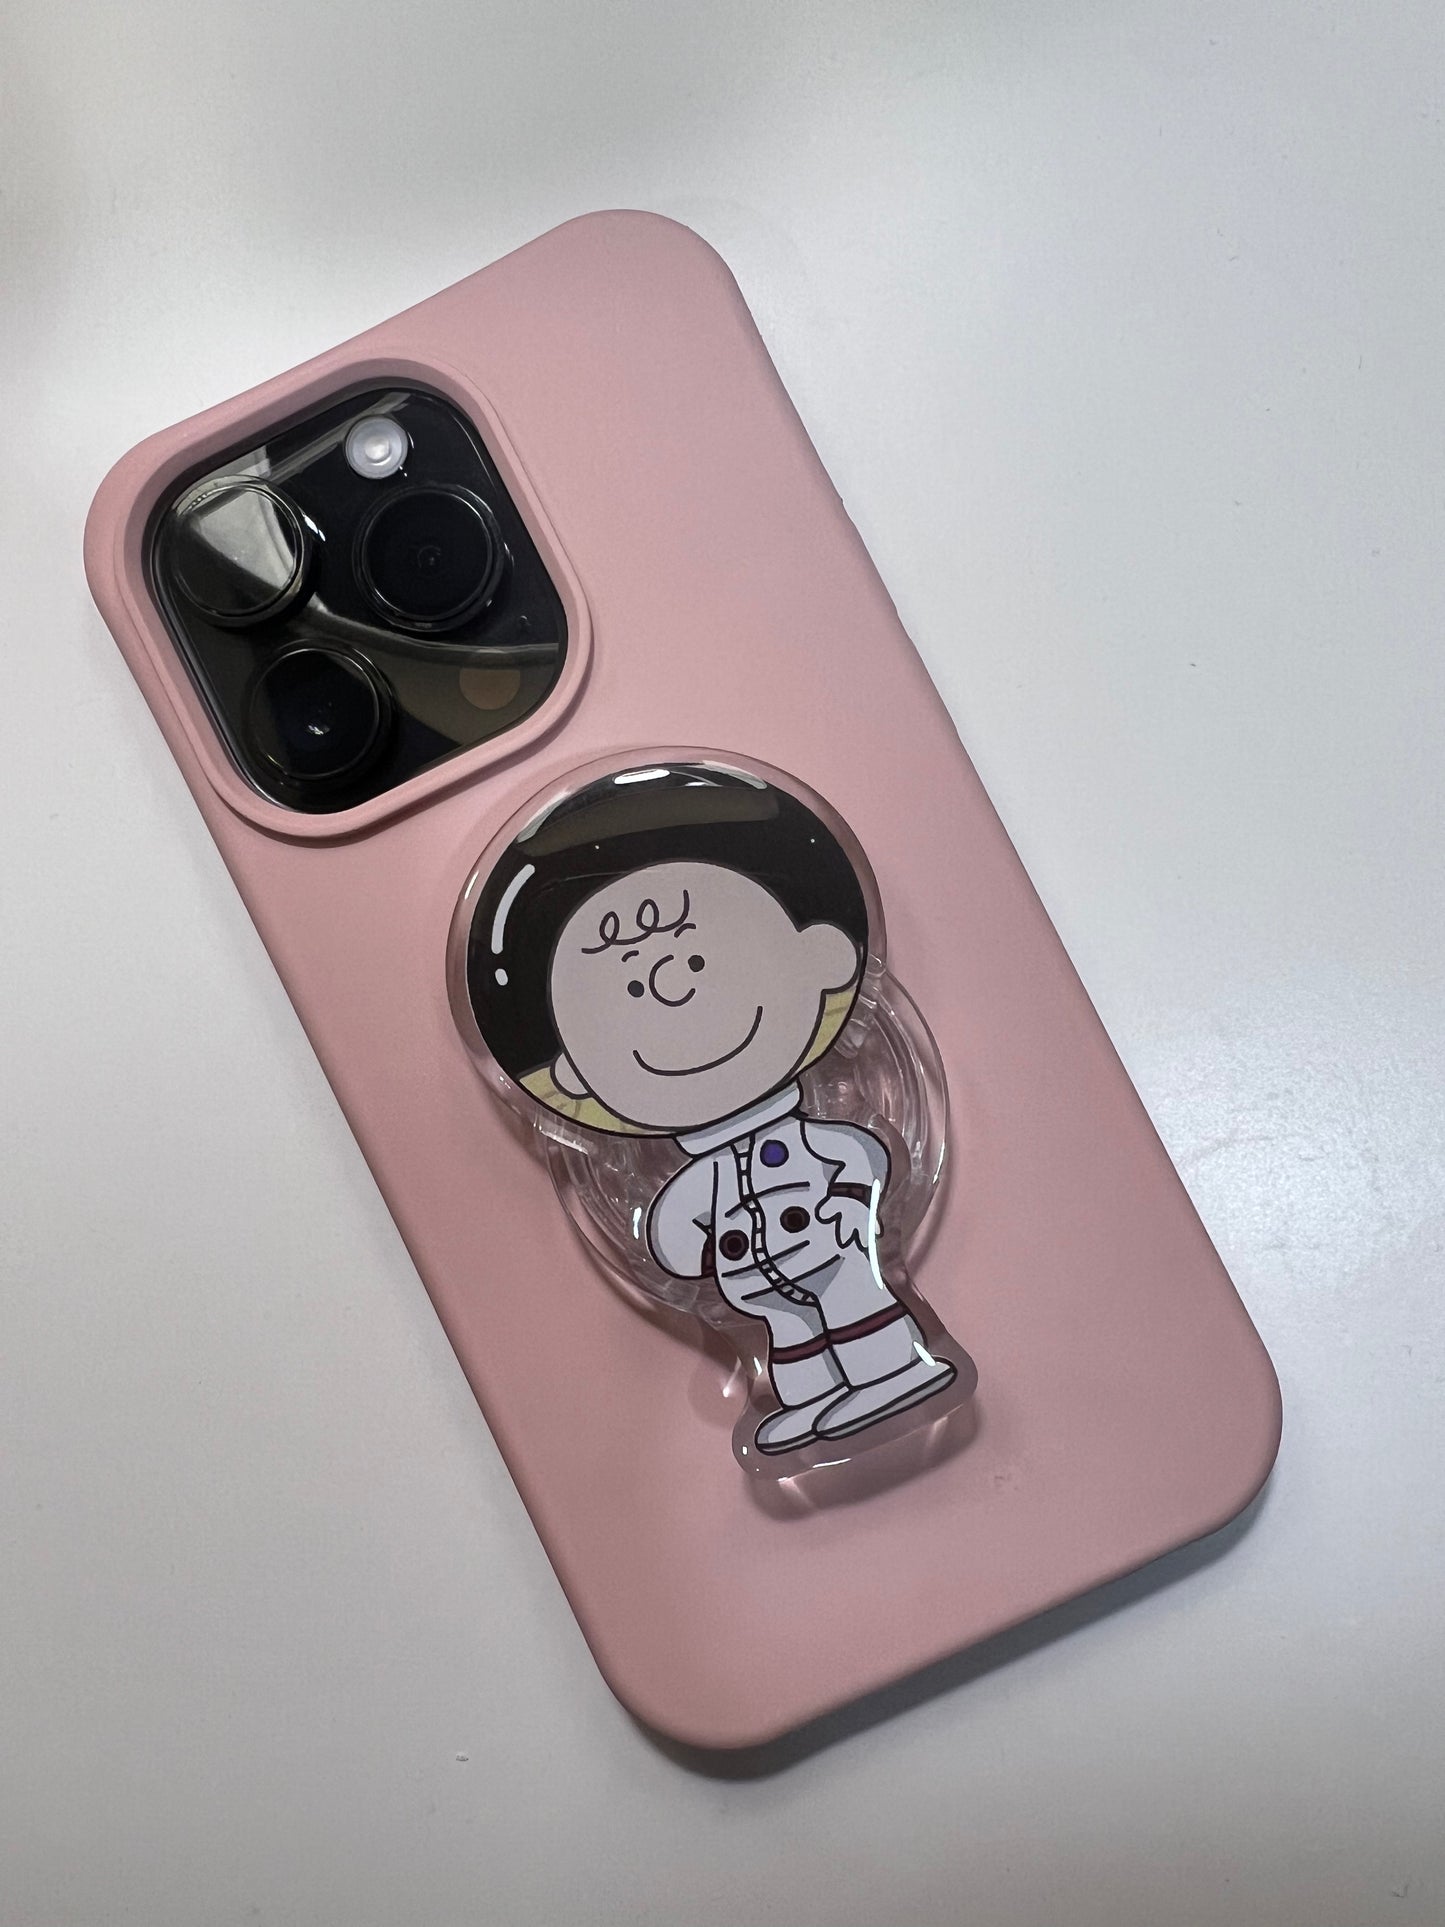 Snoopy / Charlie Brown phone grip tok/ Holder